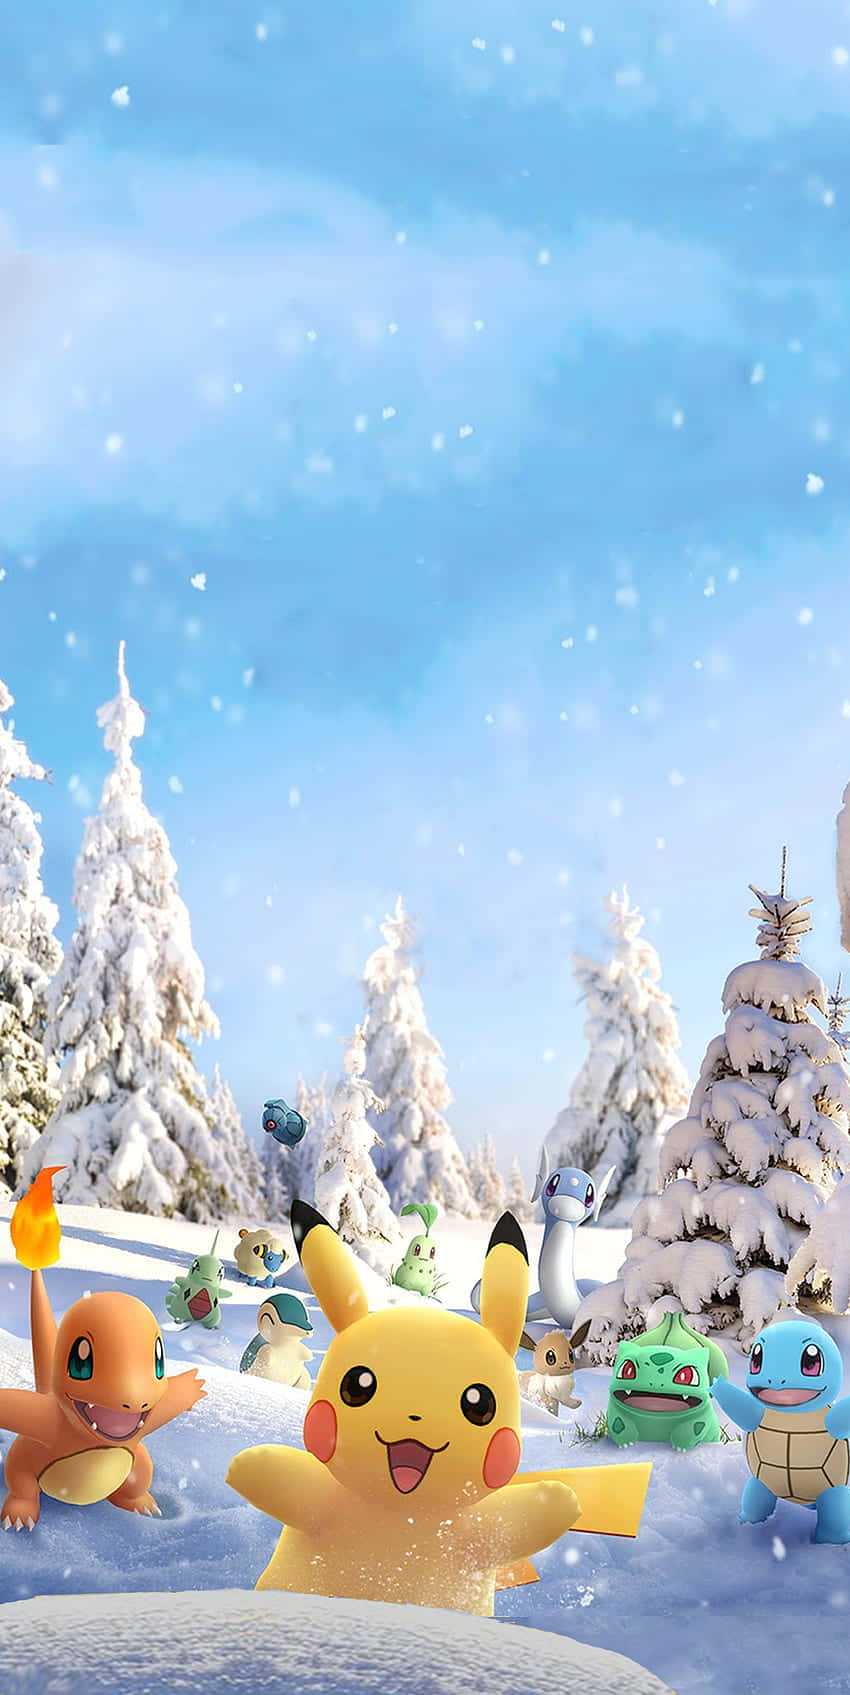 Pikachu fejrer jul Wallpaper